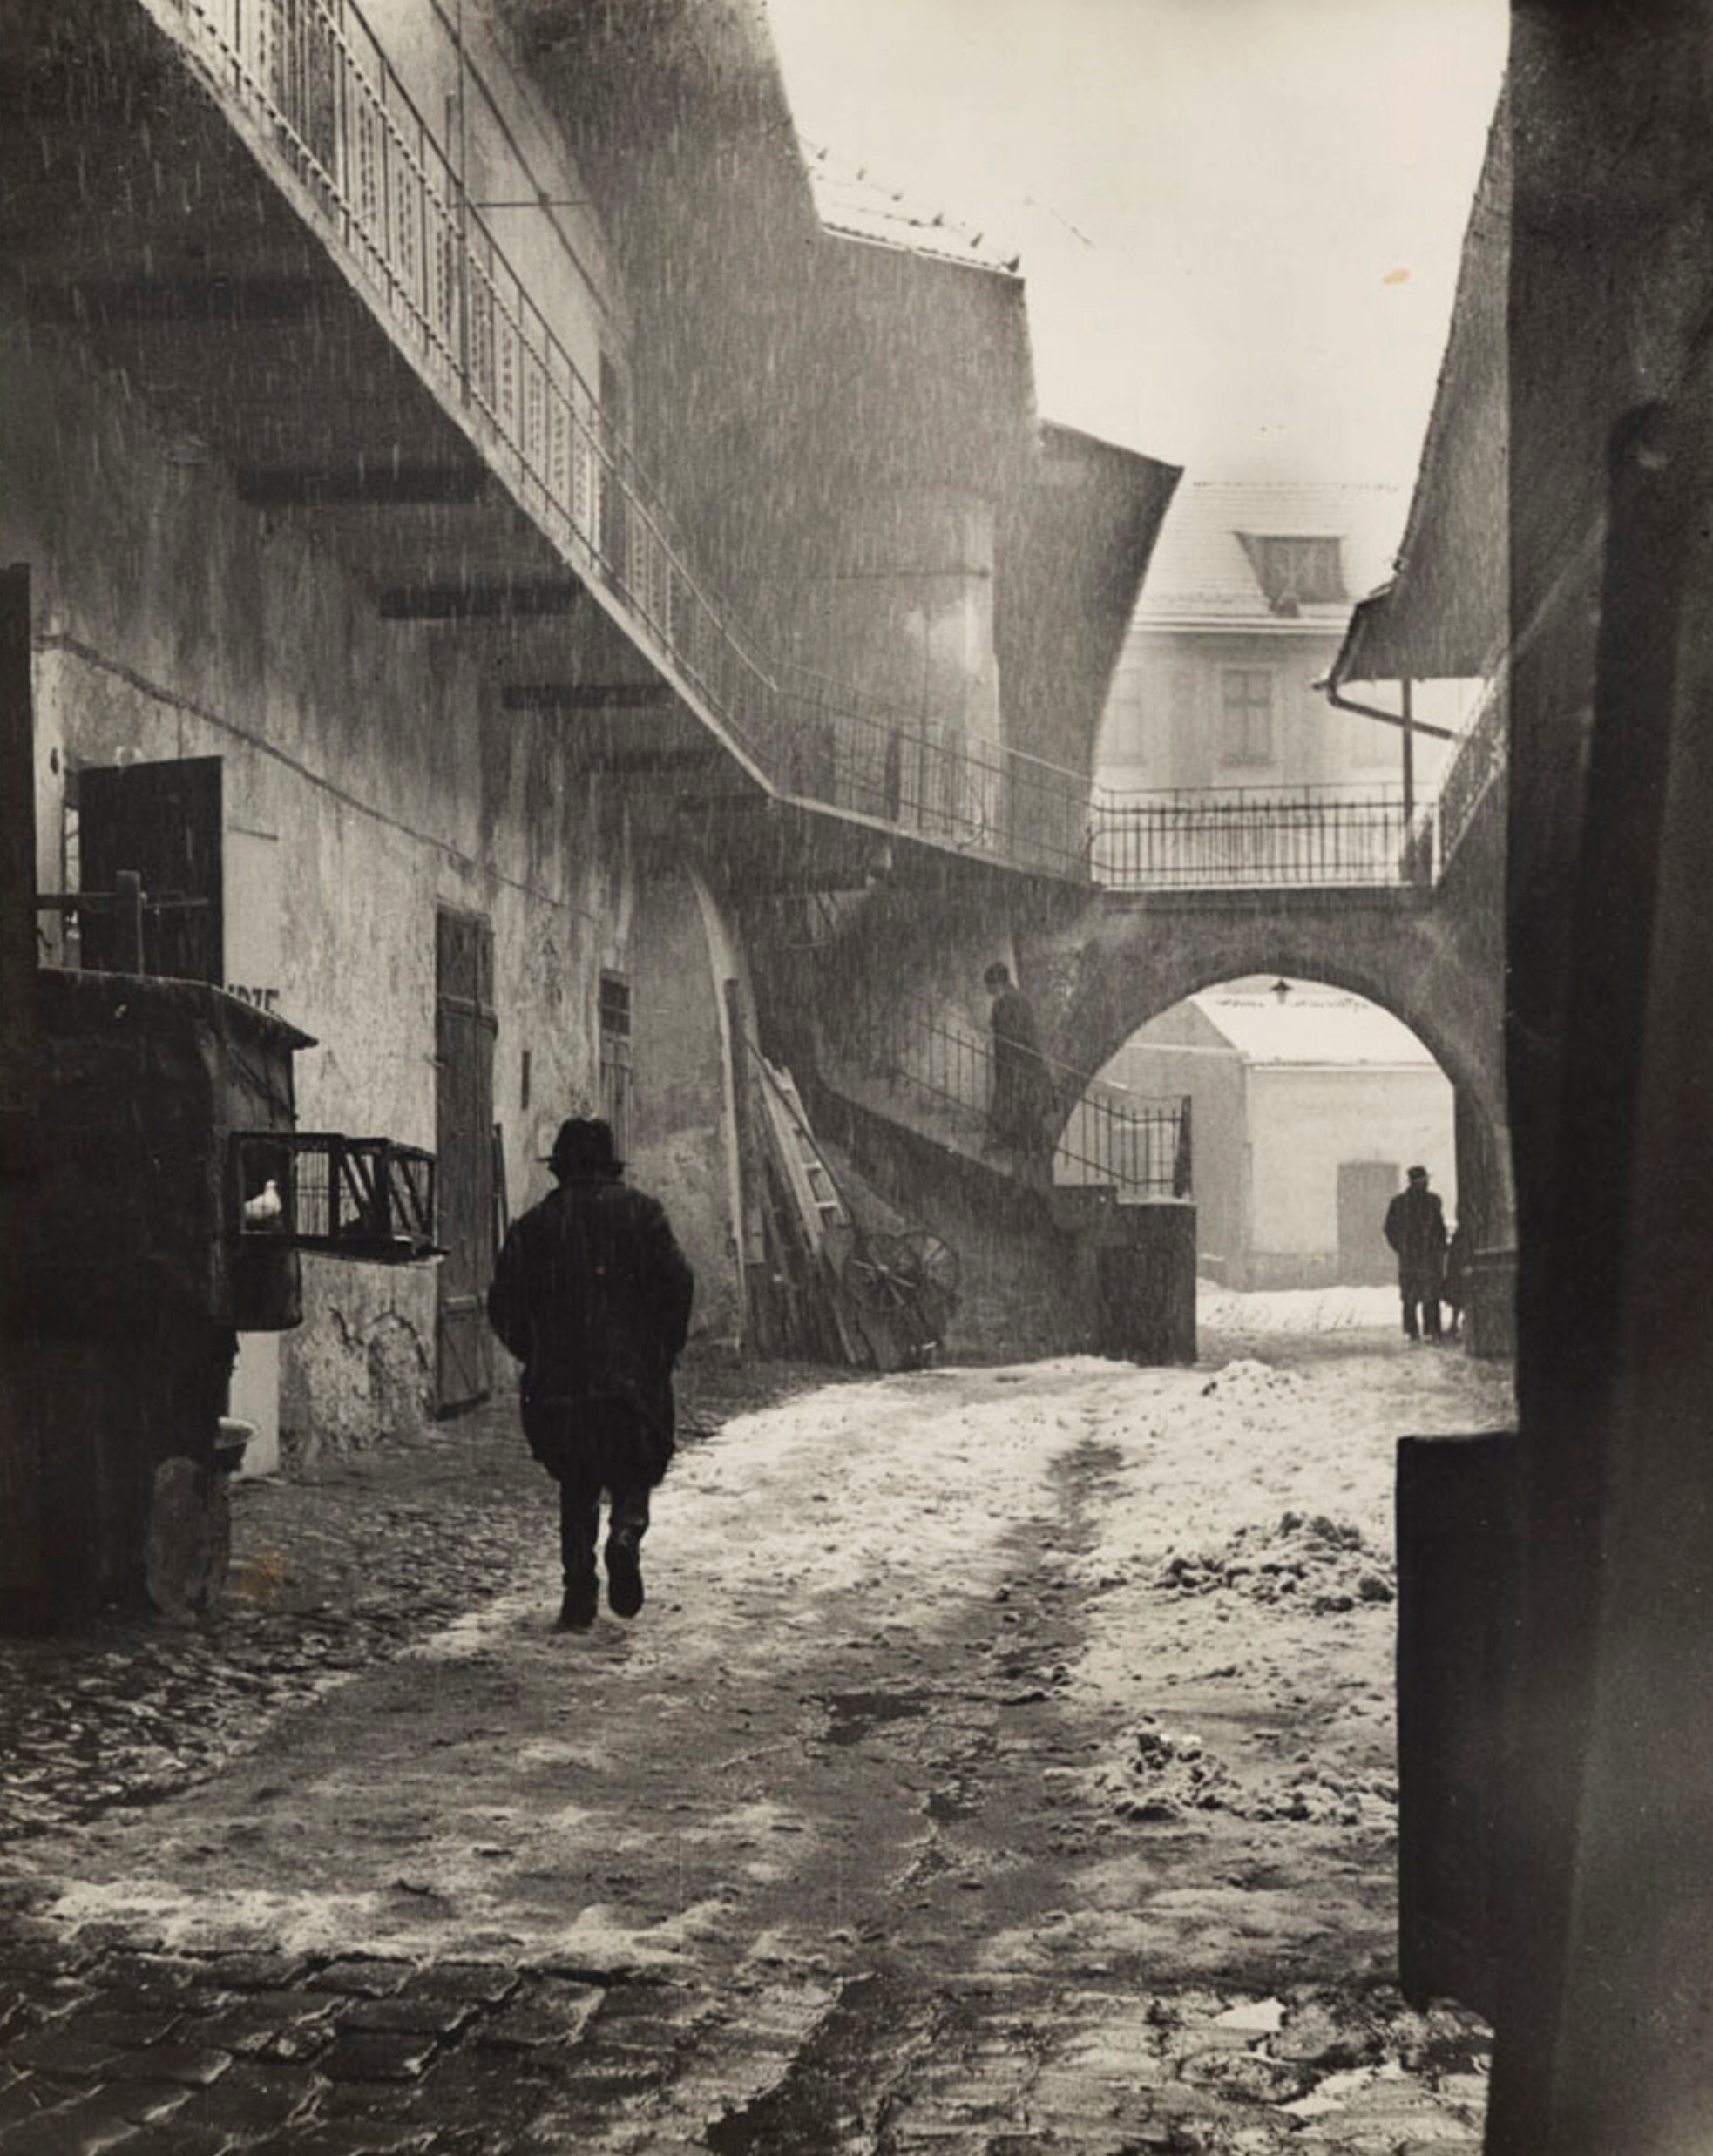 Вход в Казимеж, еврейский район Кракова., ок. 1935-38 гг. Фотограф Роман Вишняк